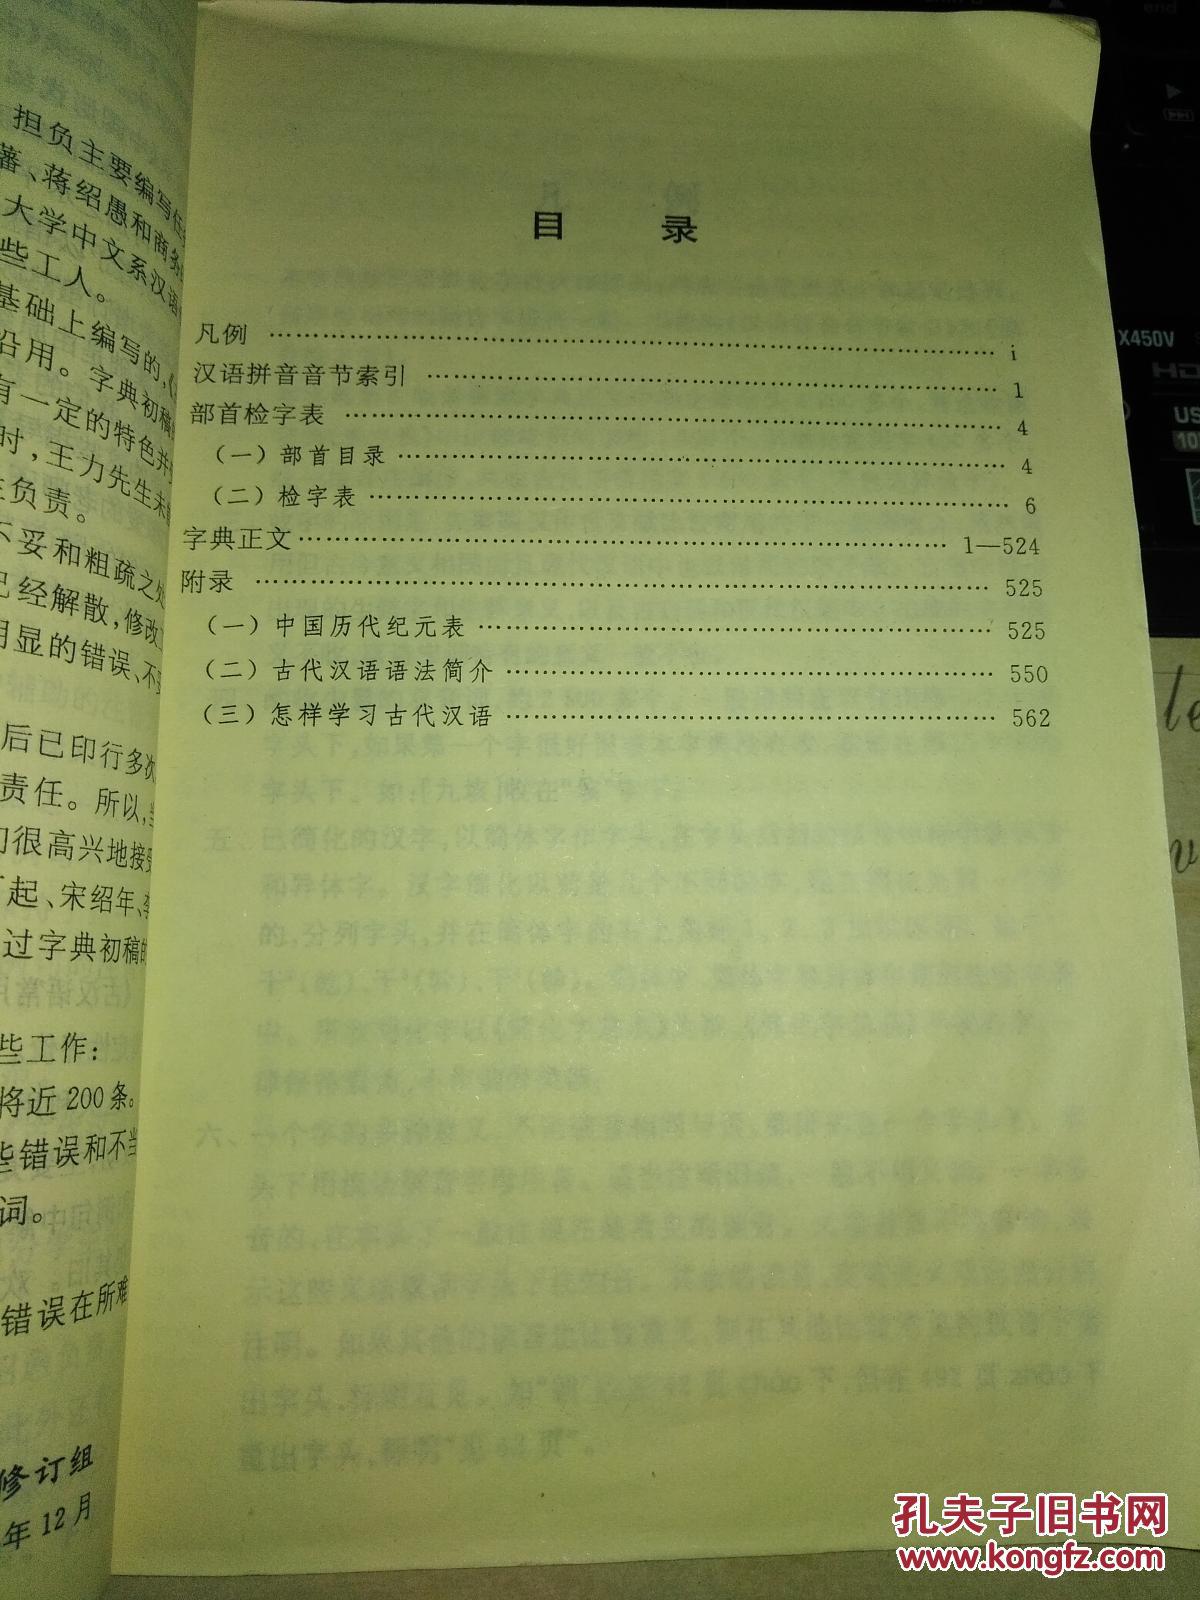 【图】古汉语常用字字典(第6版)_北京:商务印书馆